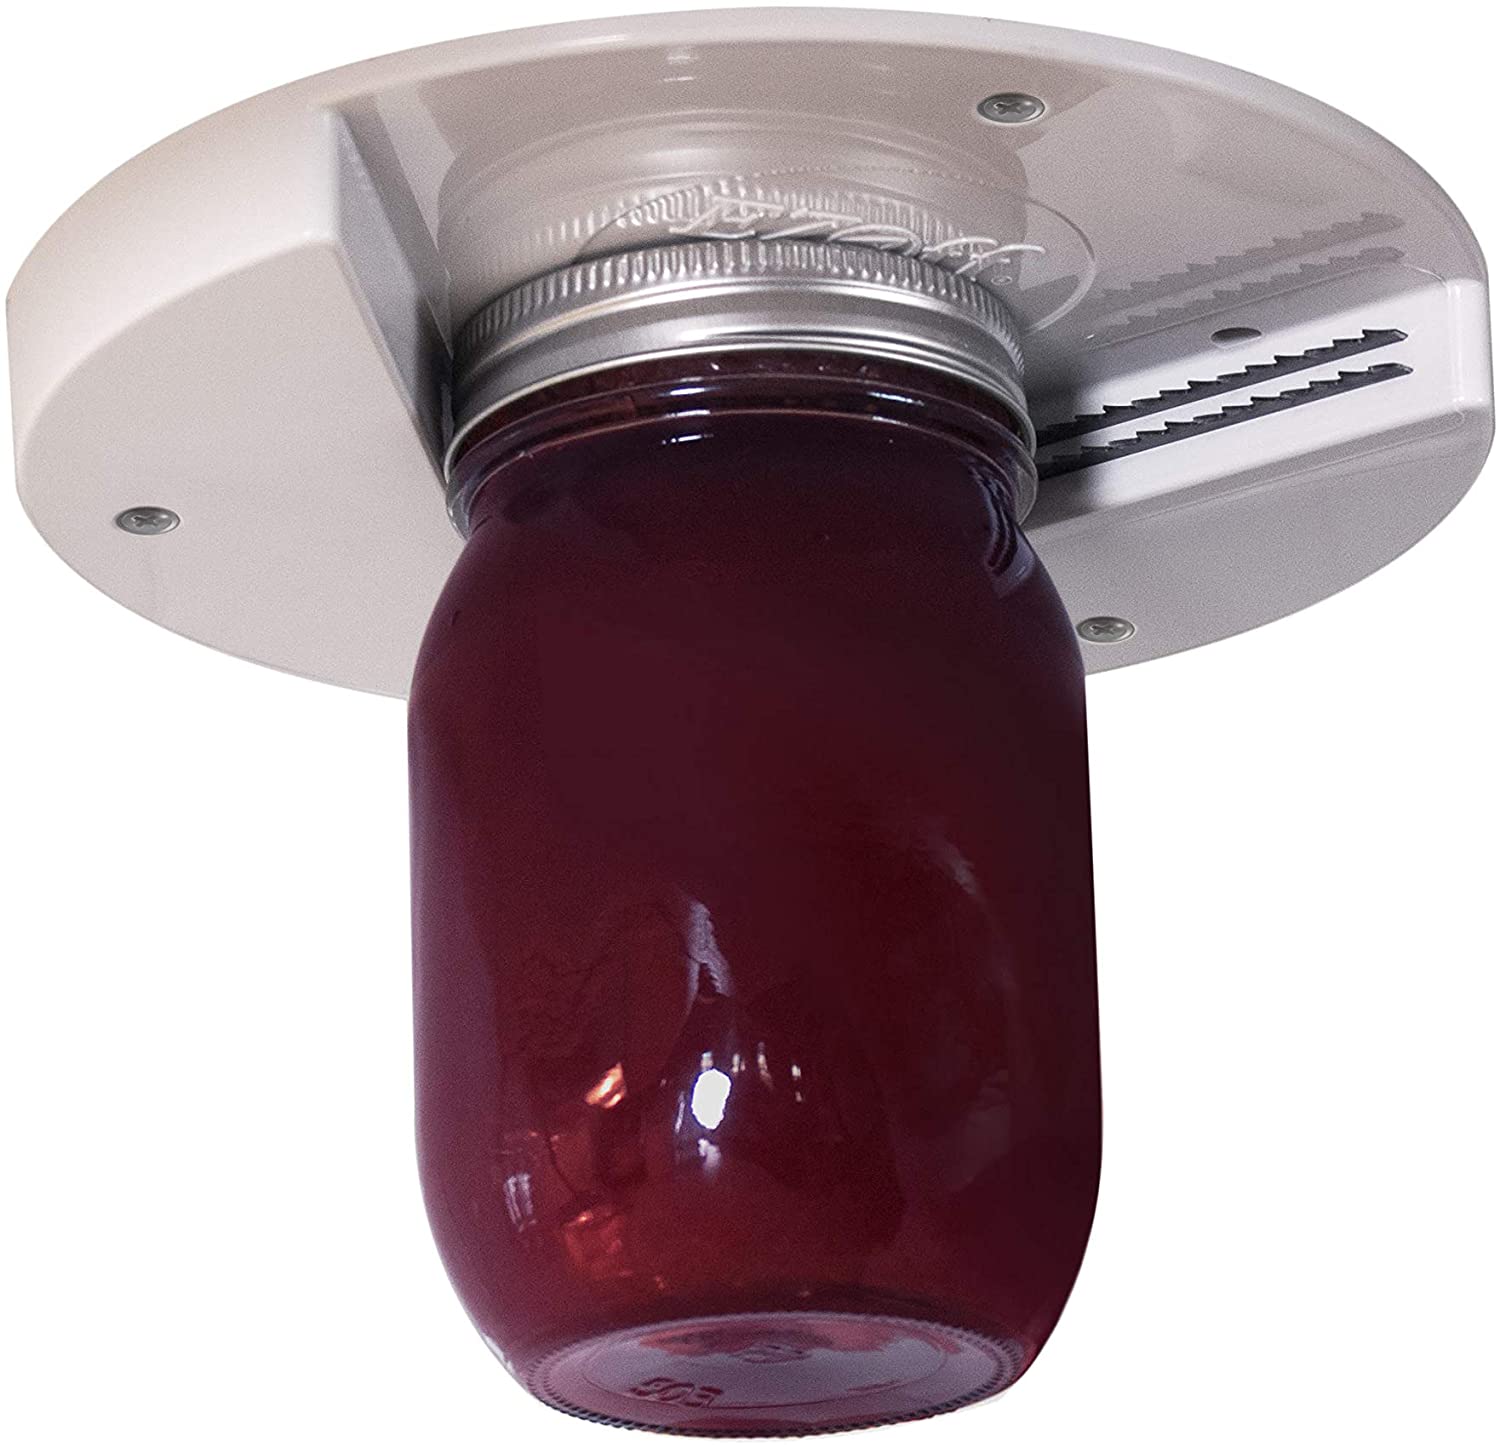 Under Cabinet Jar Opener – The Kitchen Guru